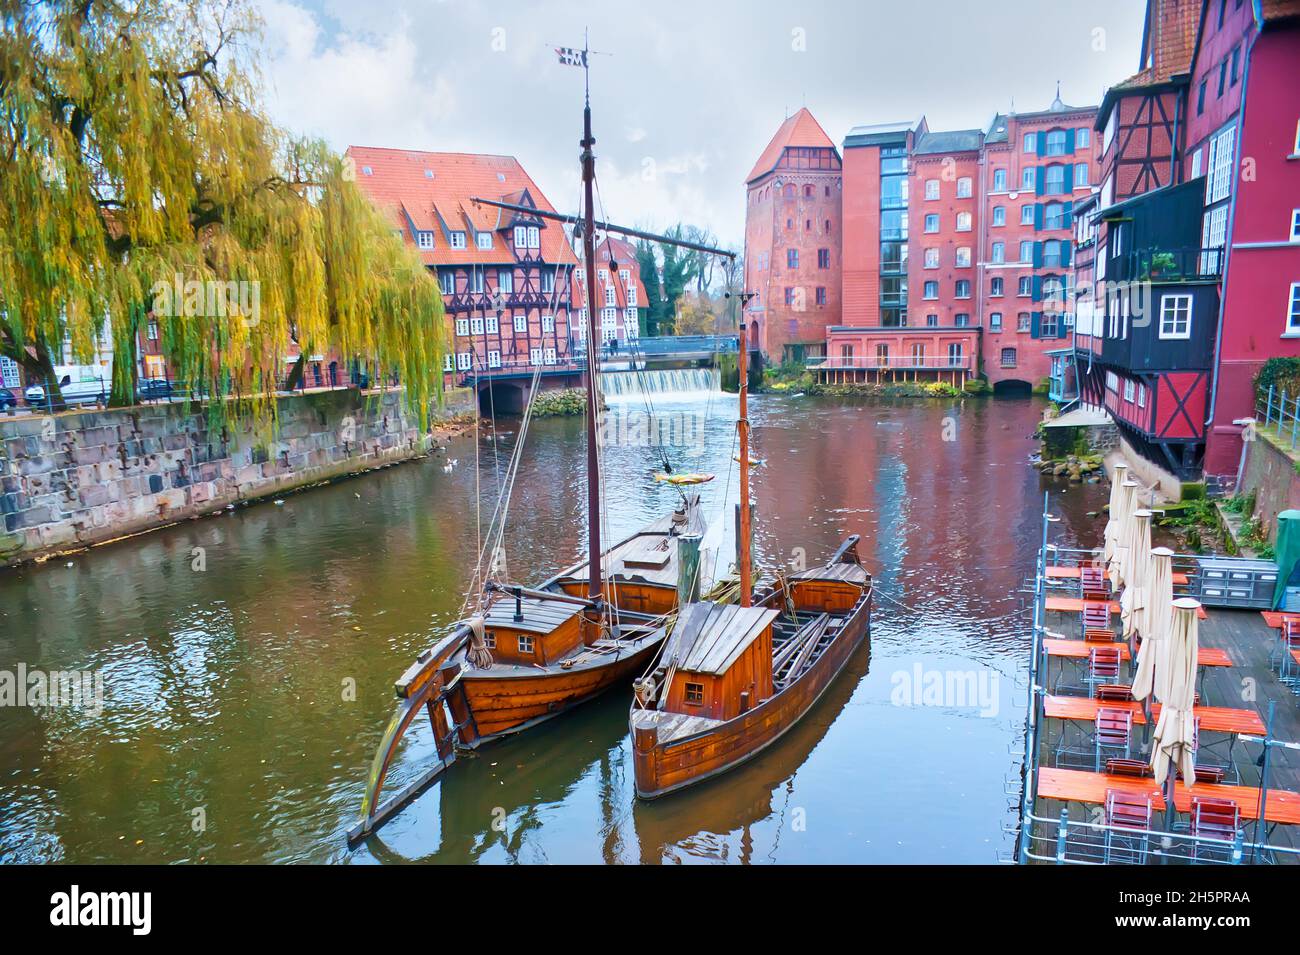 Stintmarkt (smelt market) of Hanseatic town Lüneburg, with Salz-Prahm and Salz-Ewer boats, Lower Saxony, Germany Stock Photo